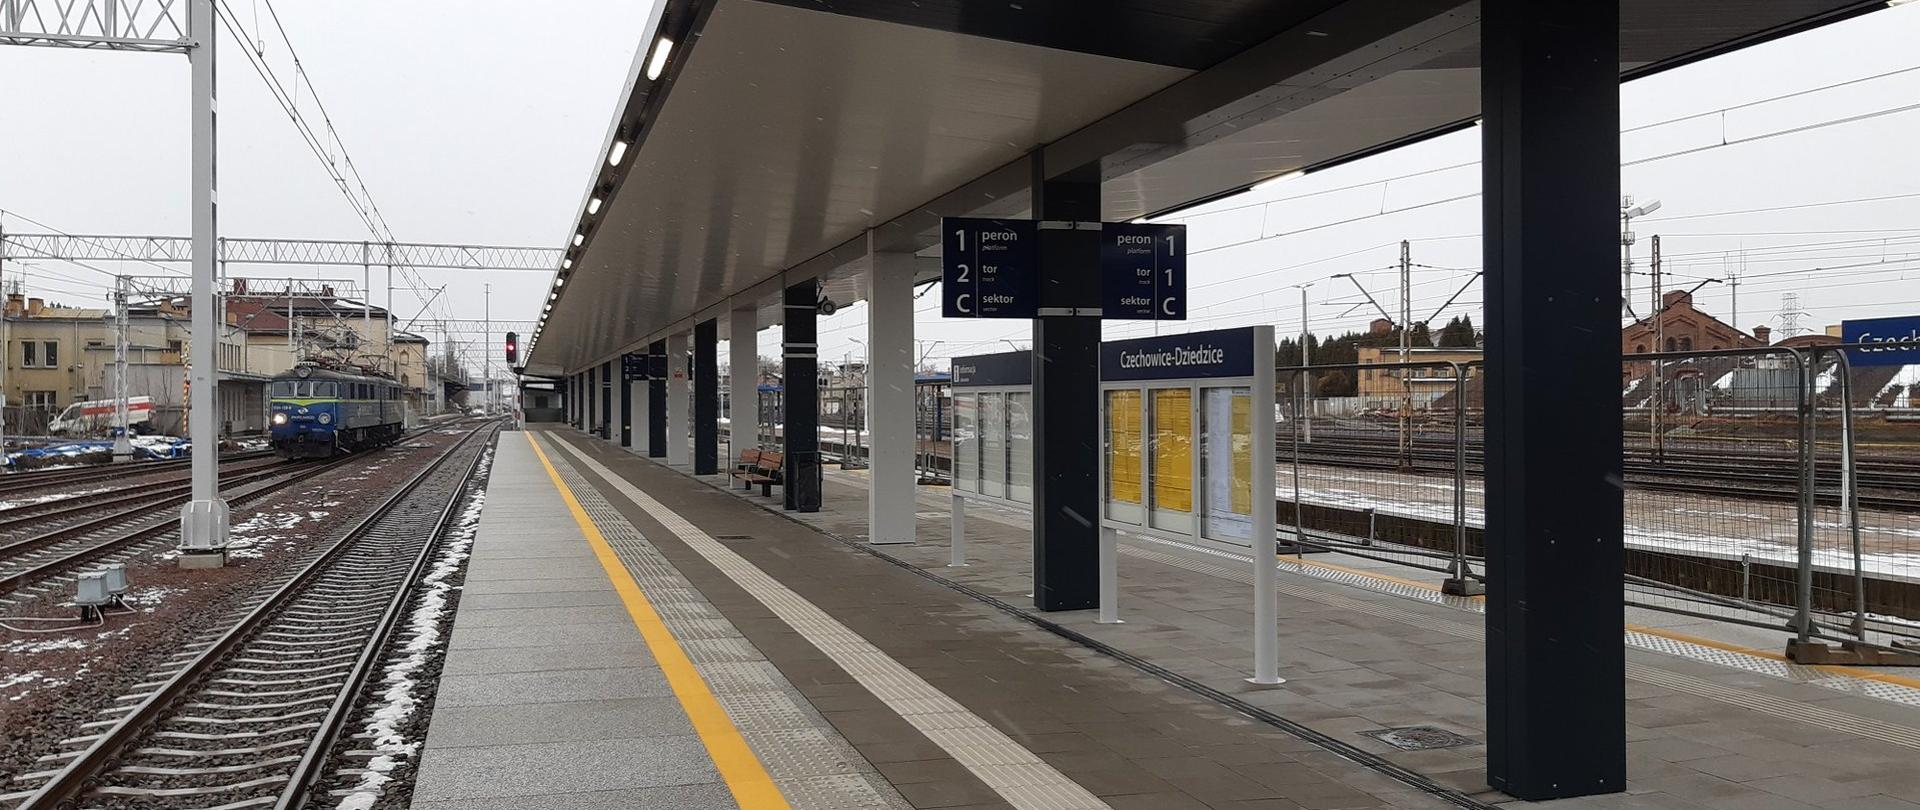 Nowy peron i przejście podziemne na stacji Czechowice-Dziedzice